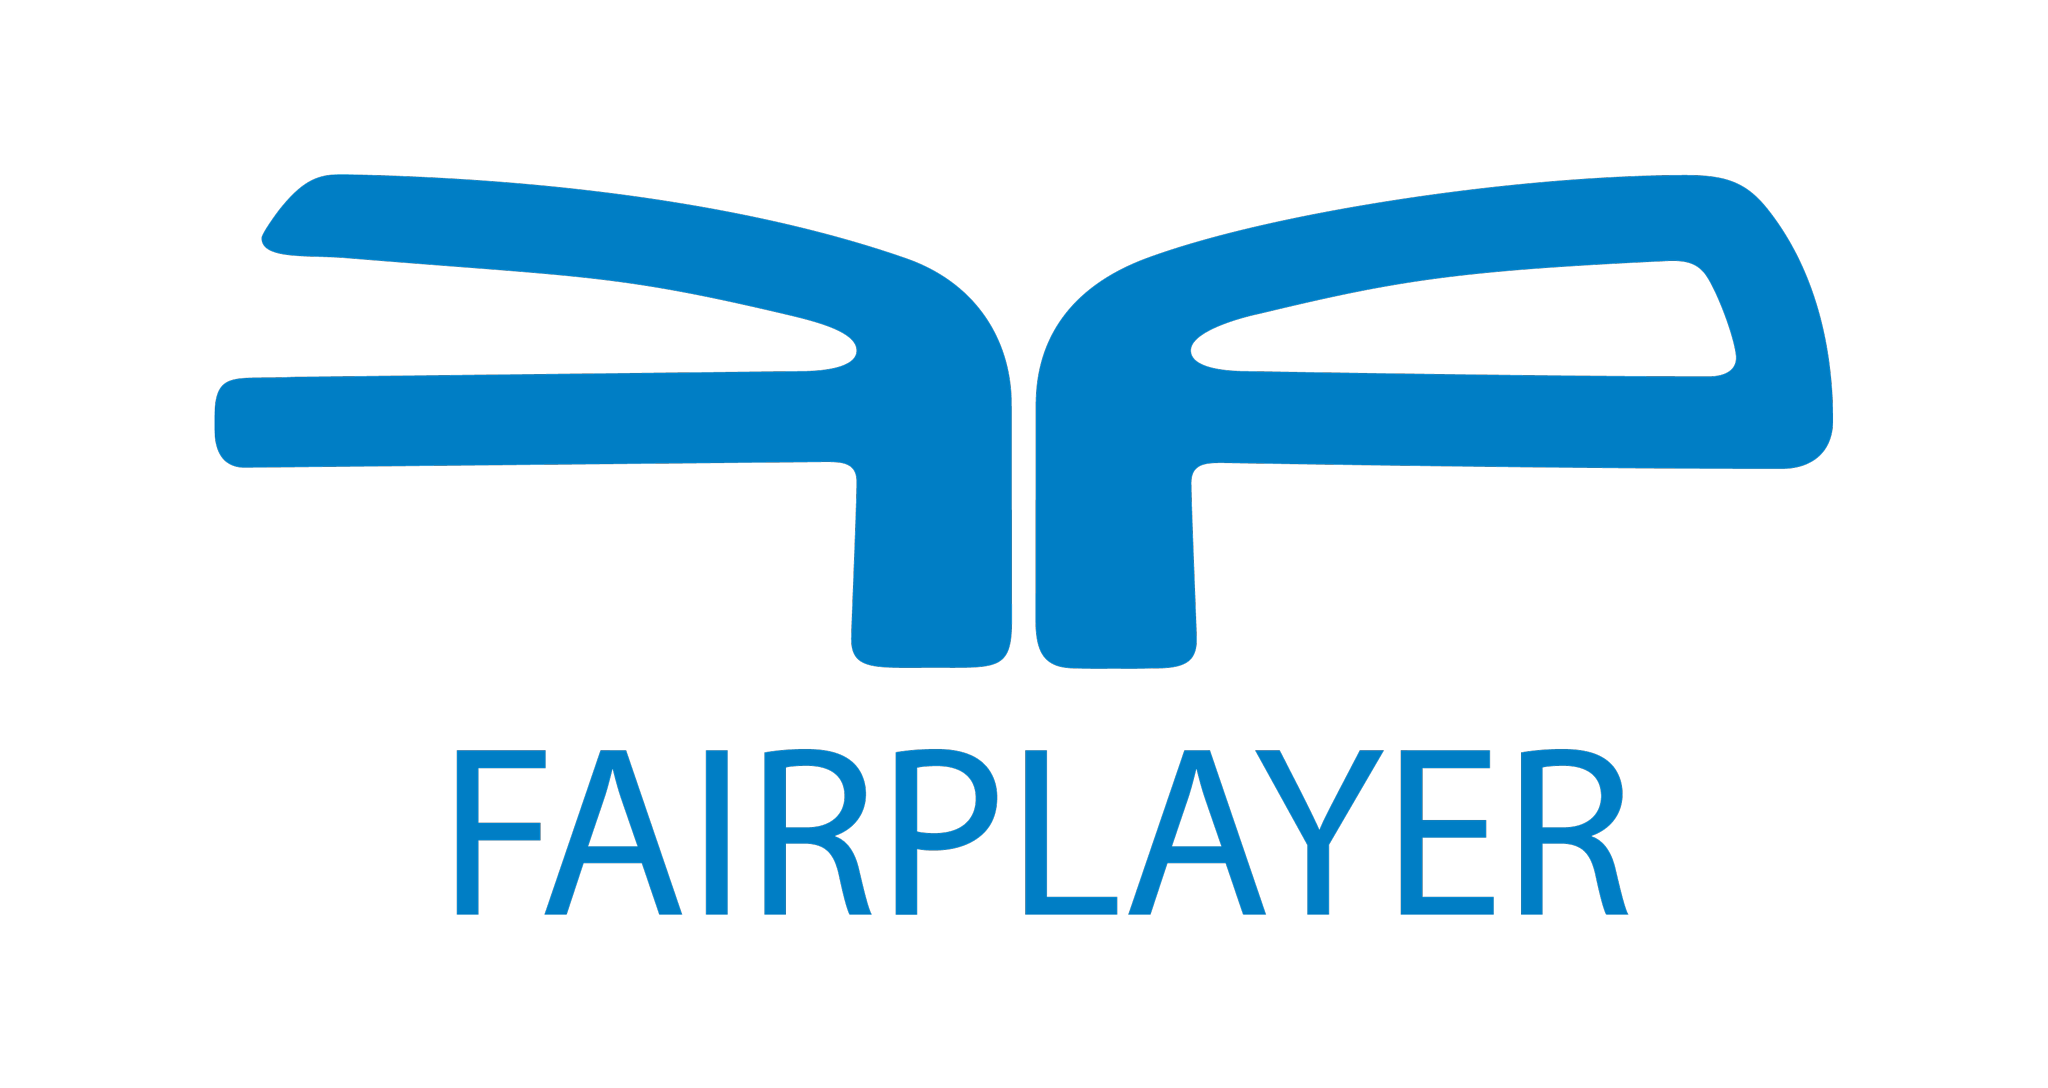 Das Fairplayer Programm